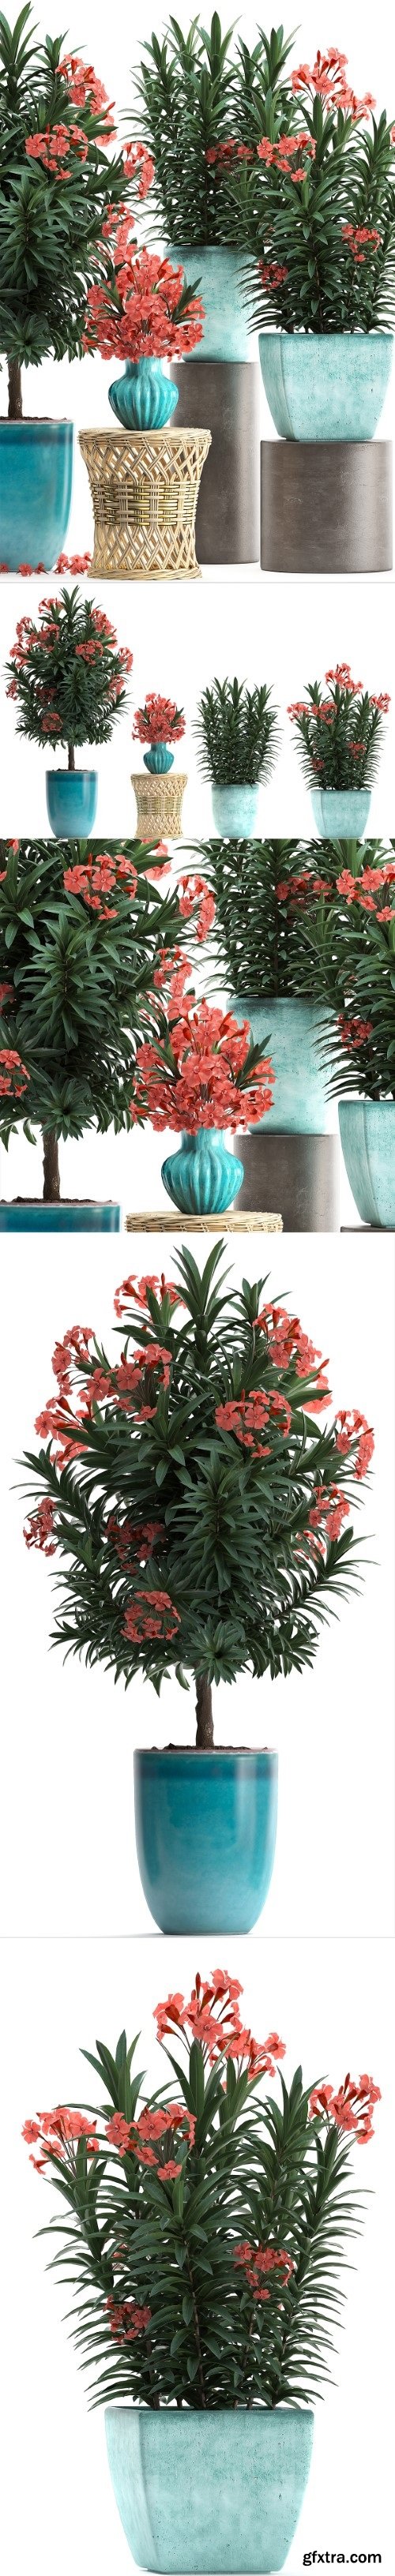 Pro 3DSky - Plant Collection 270. Nerium oleander, flowering tree, pot, flowerpot, bush, bouquet, indoor plants, garden plants, landscaping, for the park, garden